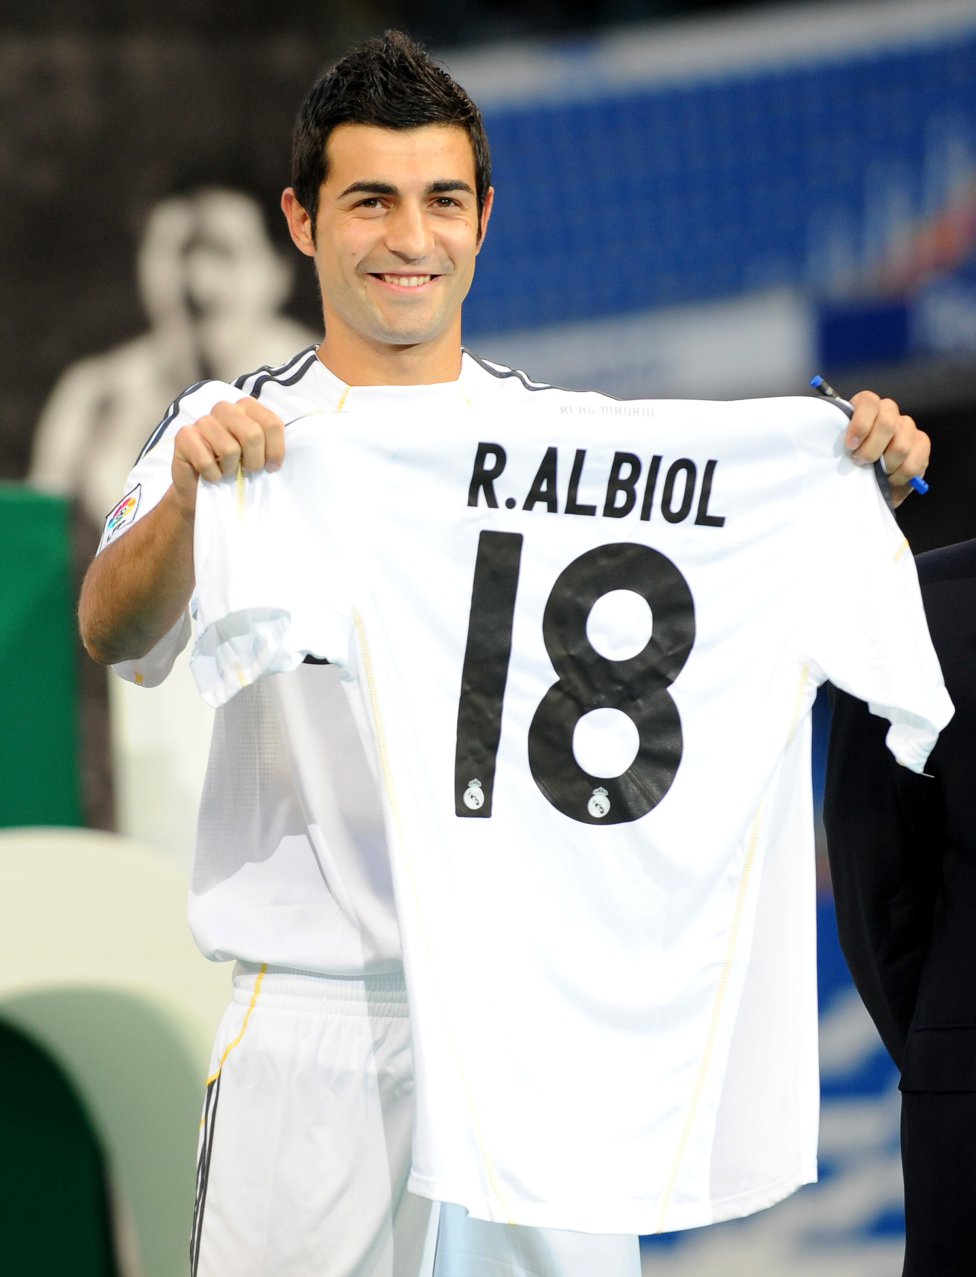 En Junio de 2009 fichó por el Real Madrid en una operación cifrada en 15 millones de euros. Su traspaso al Napoli italiano se hizo oficial el 21 de julio de 2013 por una cifra de 12 millones de euros